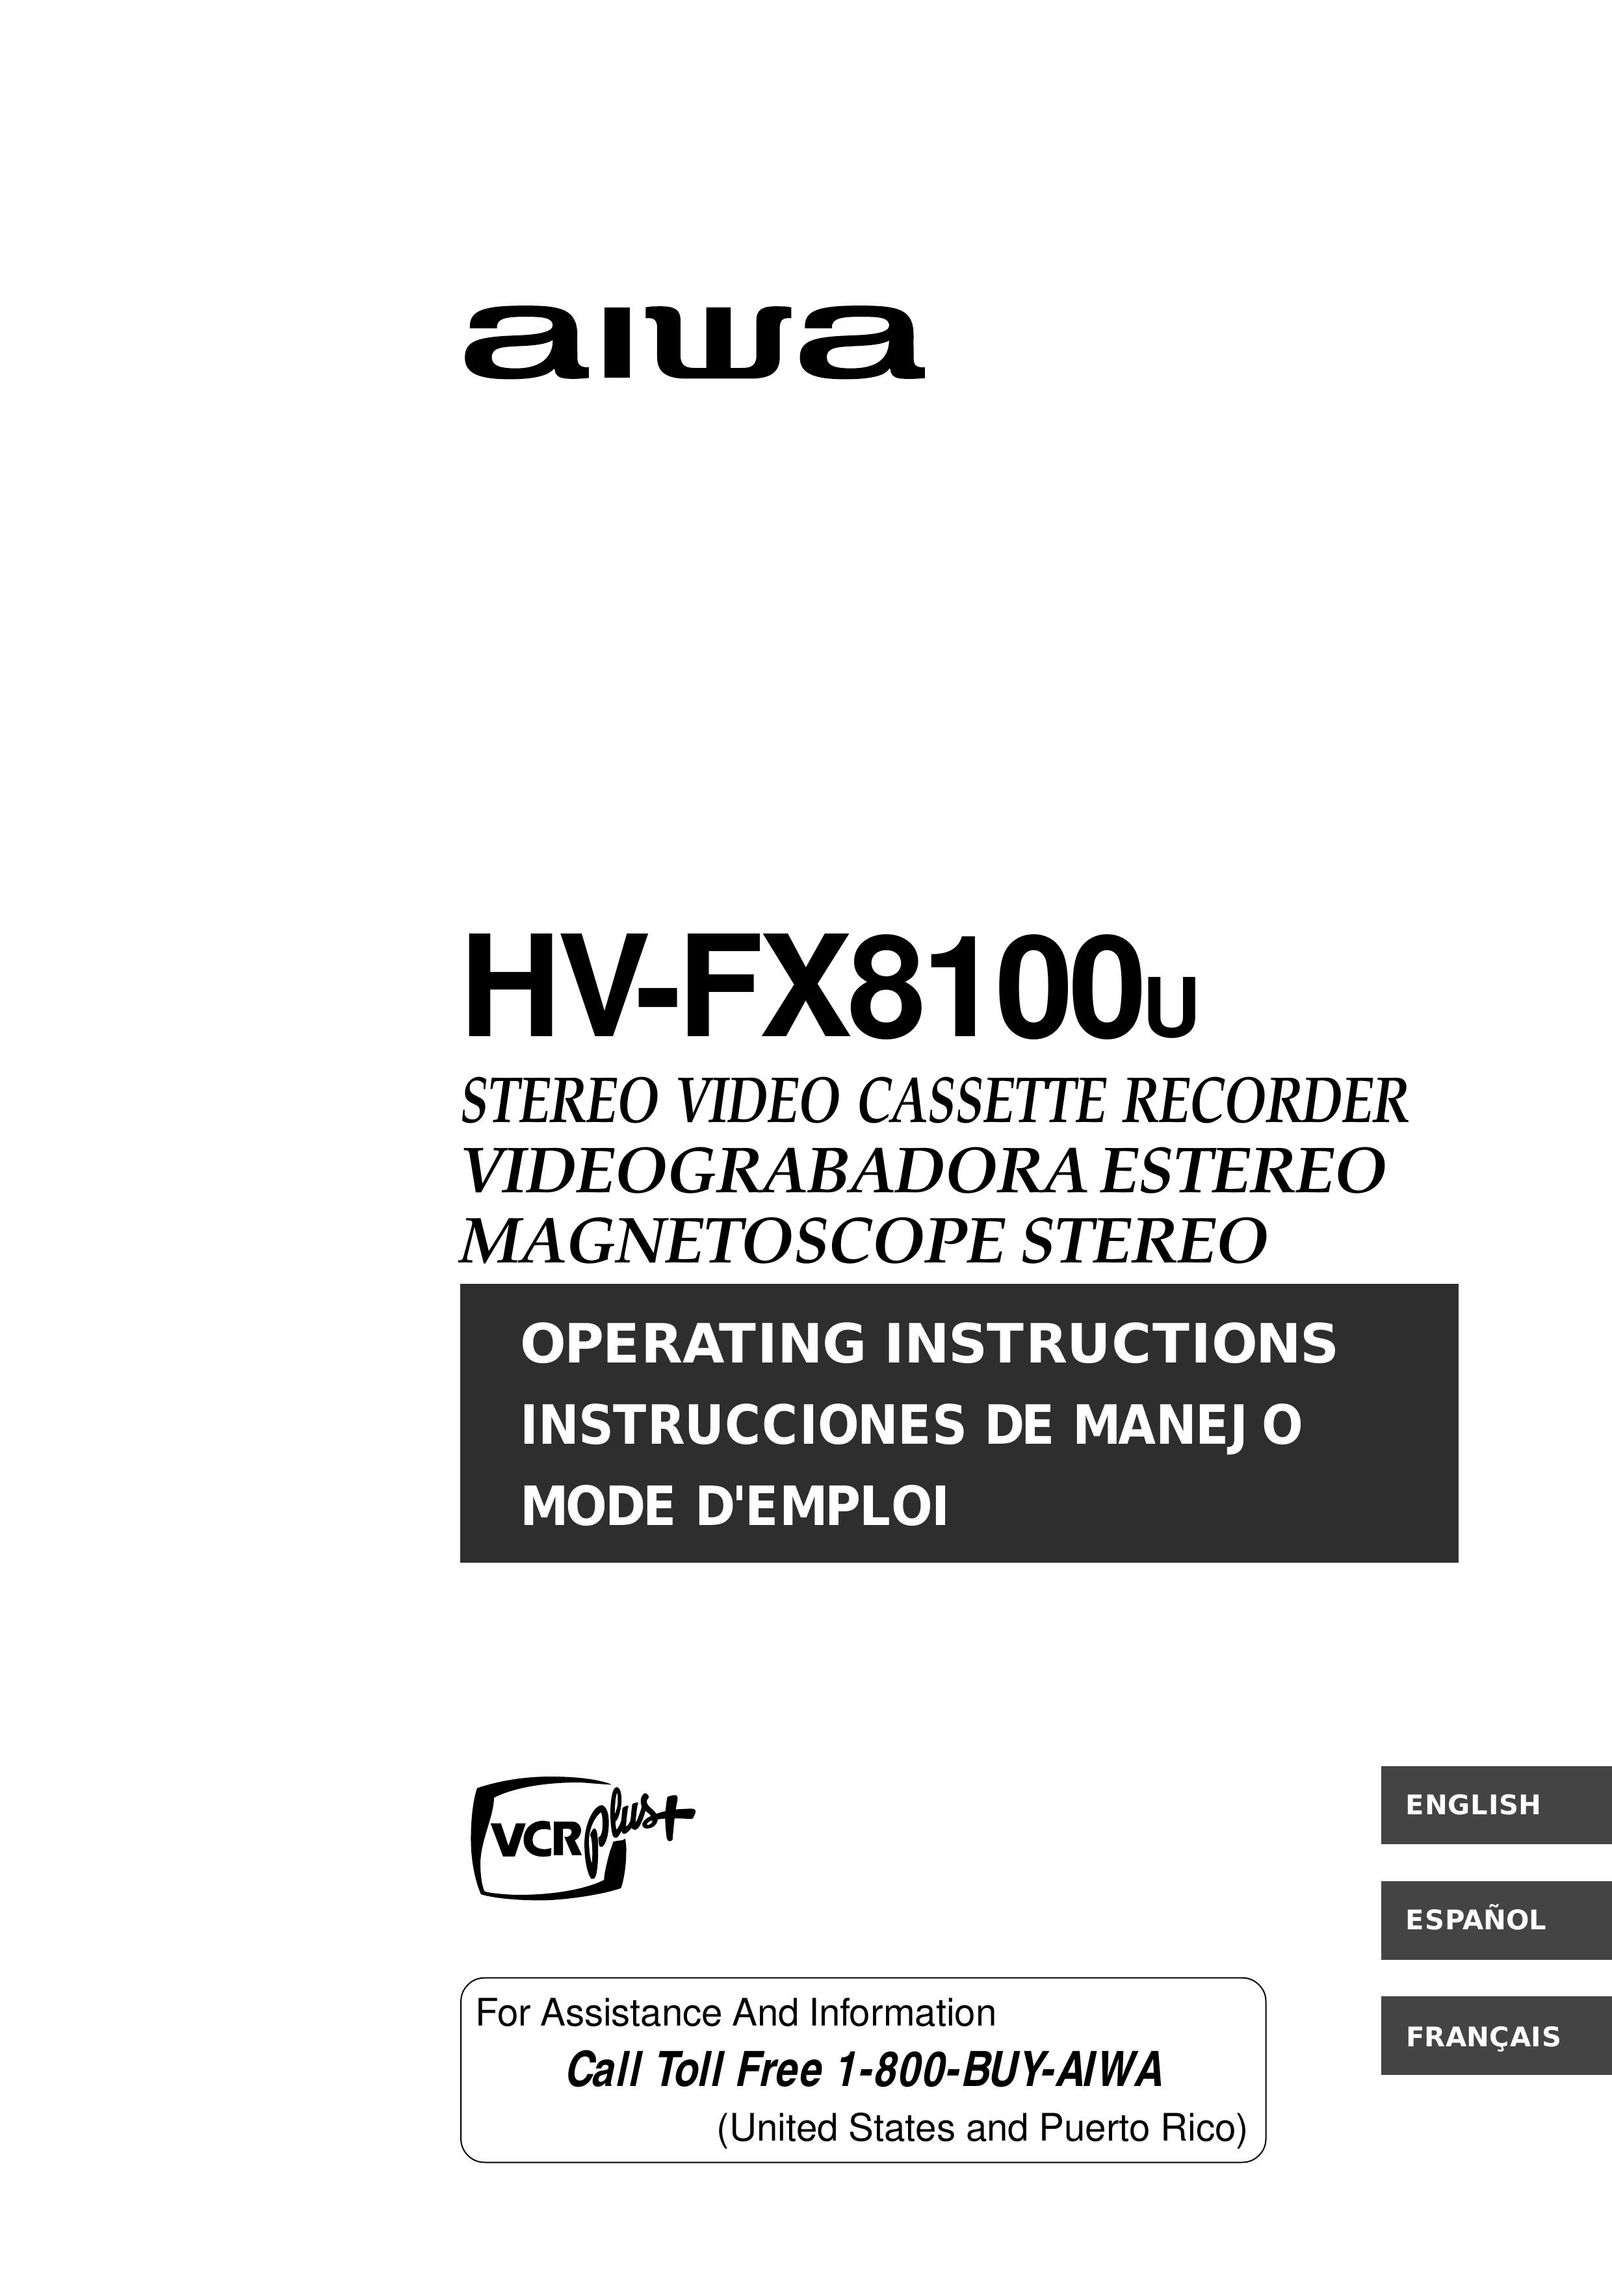 Aiwa HV-FX8100U VCR User Manual